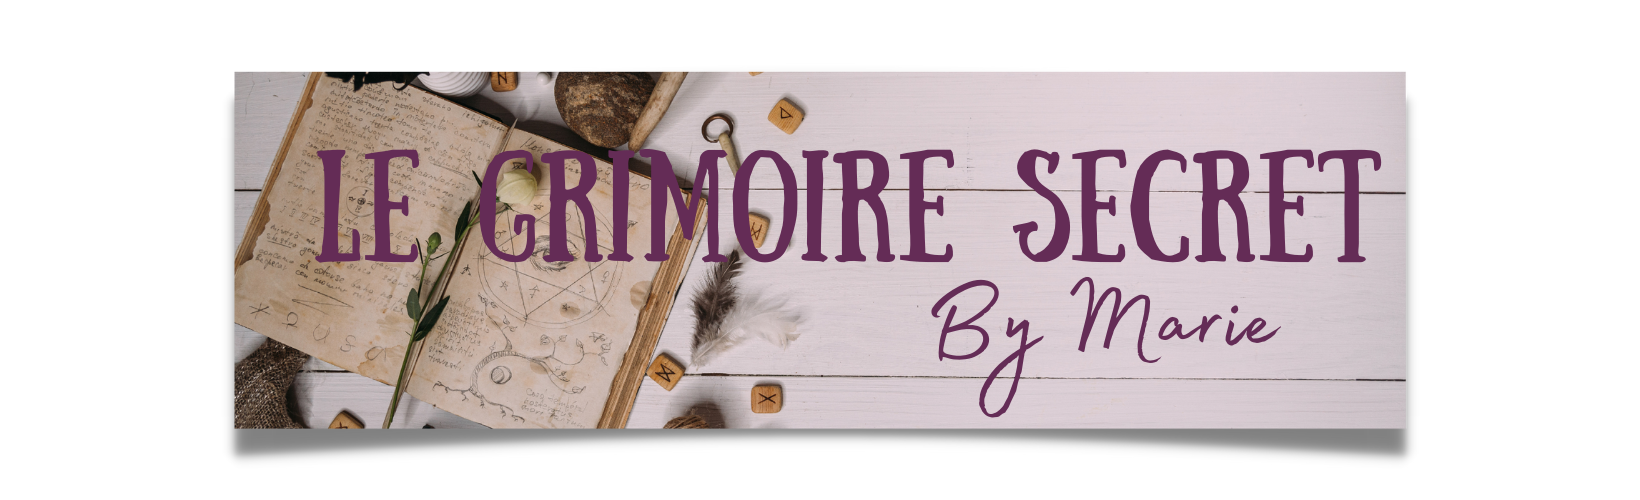 Le grimoire secret by Marie